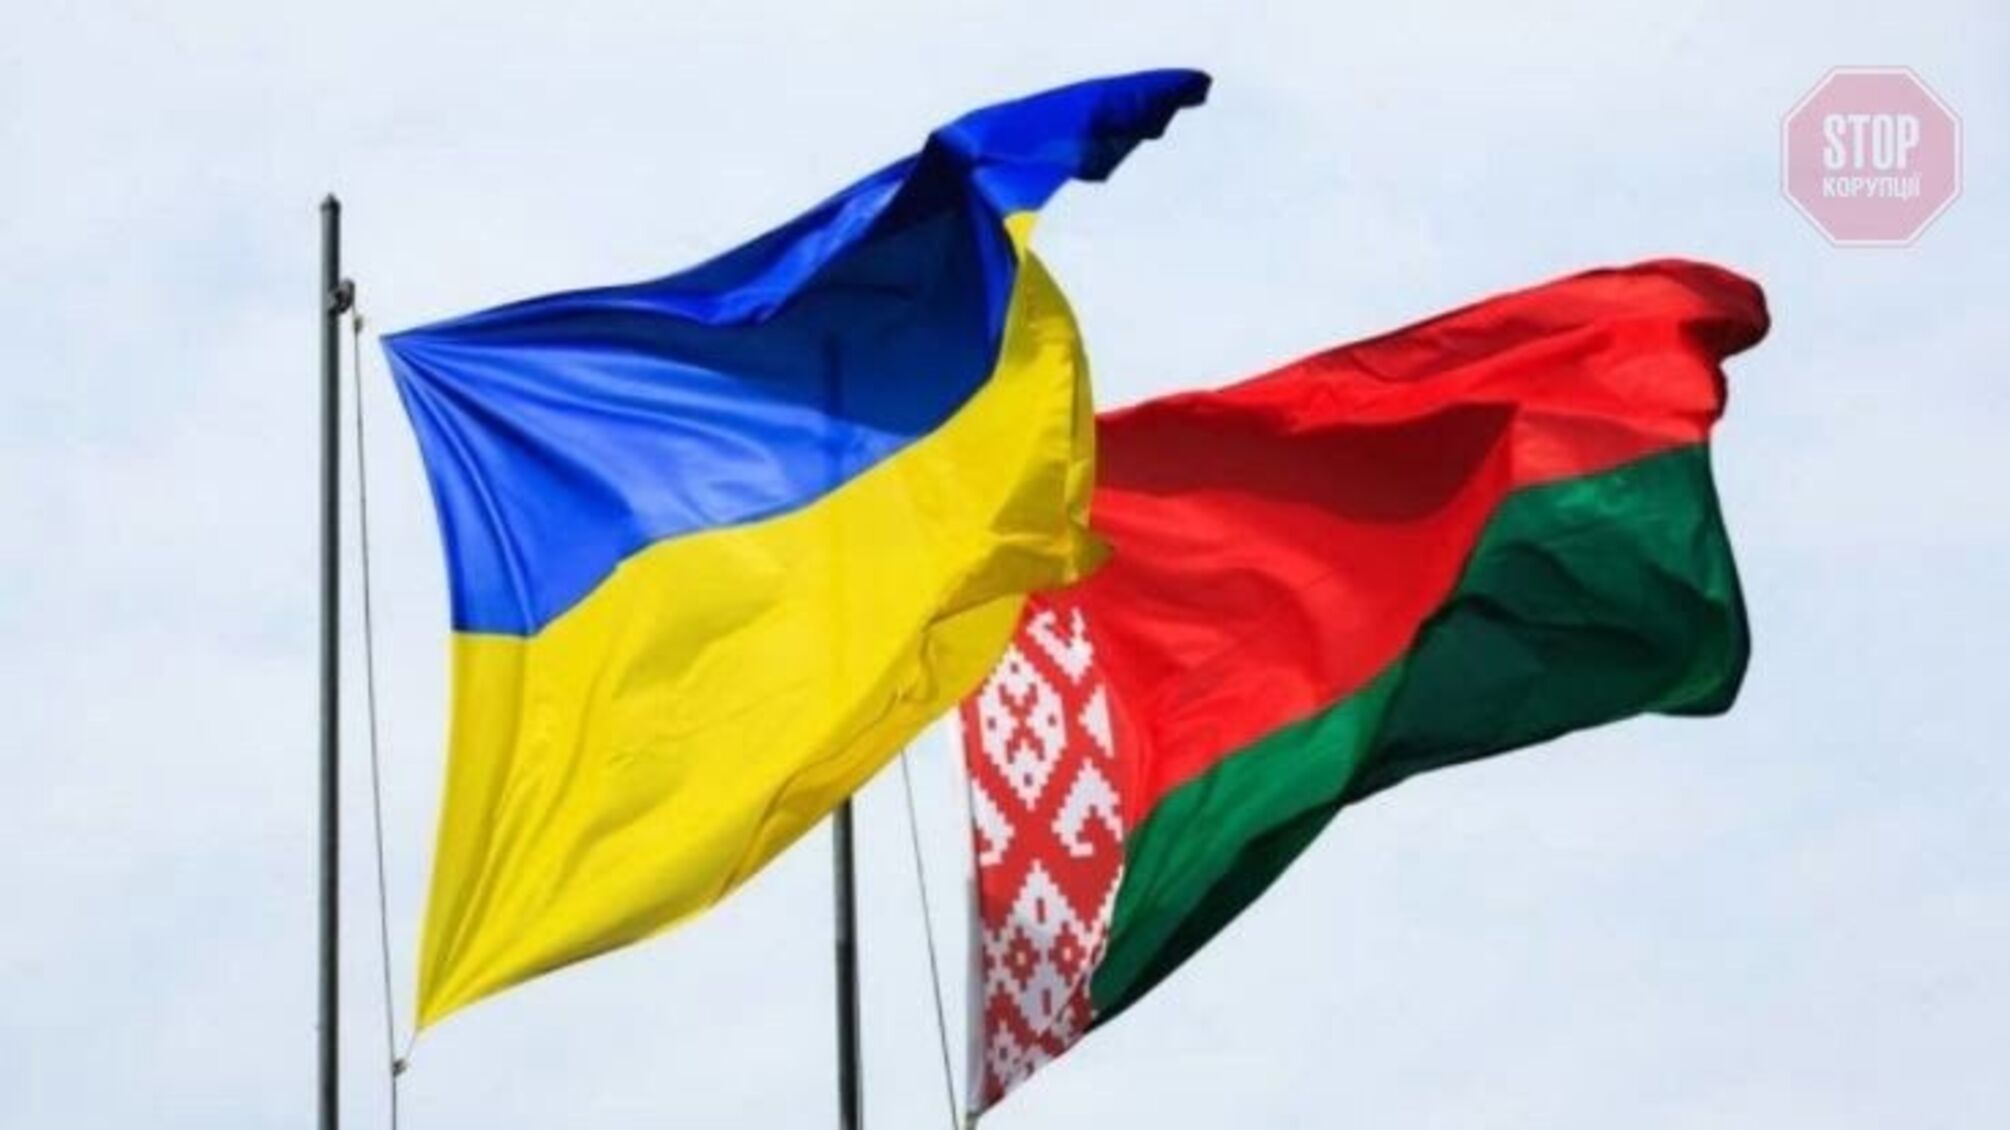 Що означає нота протесту, яку вручили послу України в Білорусі 